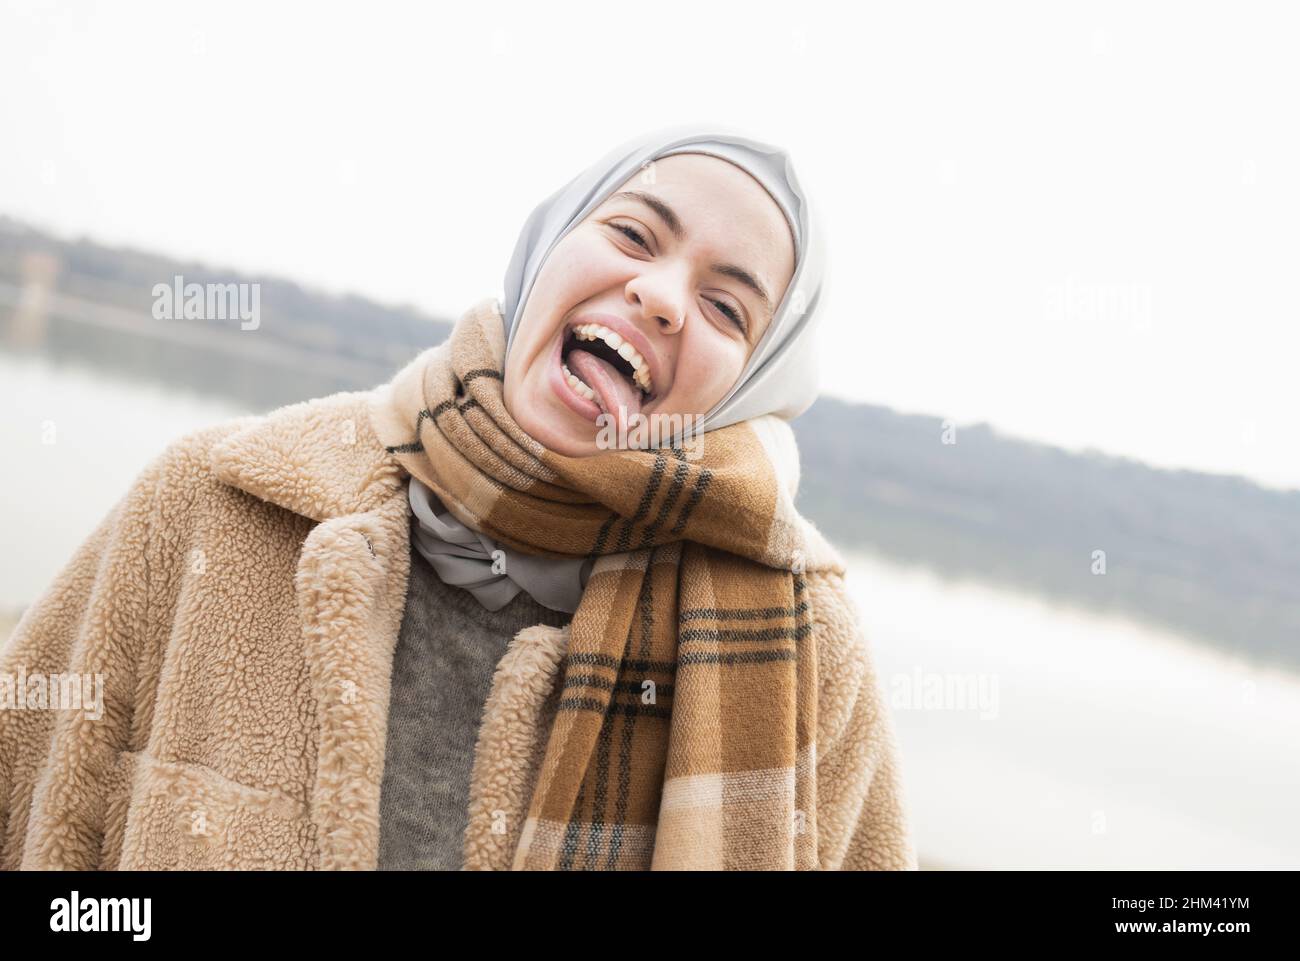 Jeune femme faisant des expressions drôles avec son visage Banque D'Images